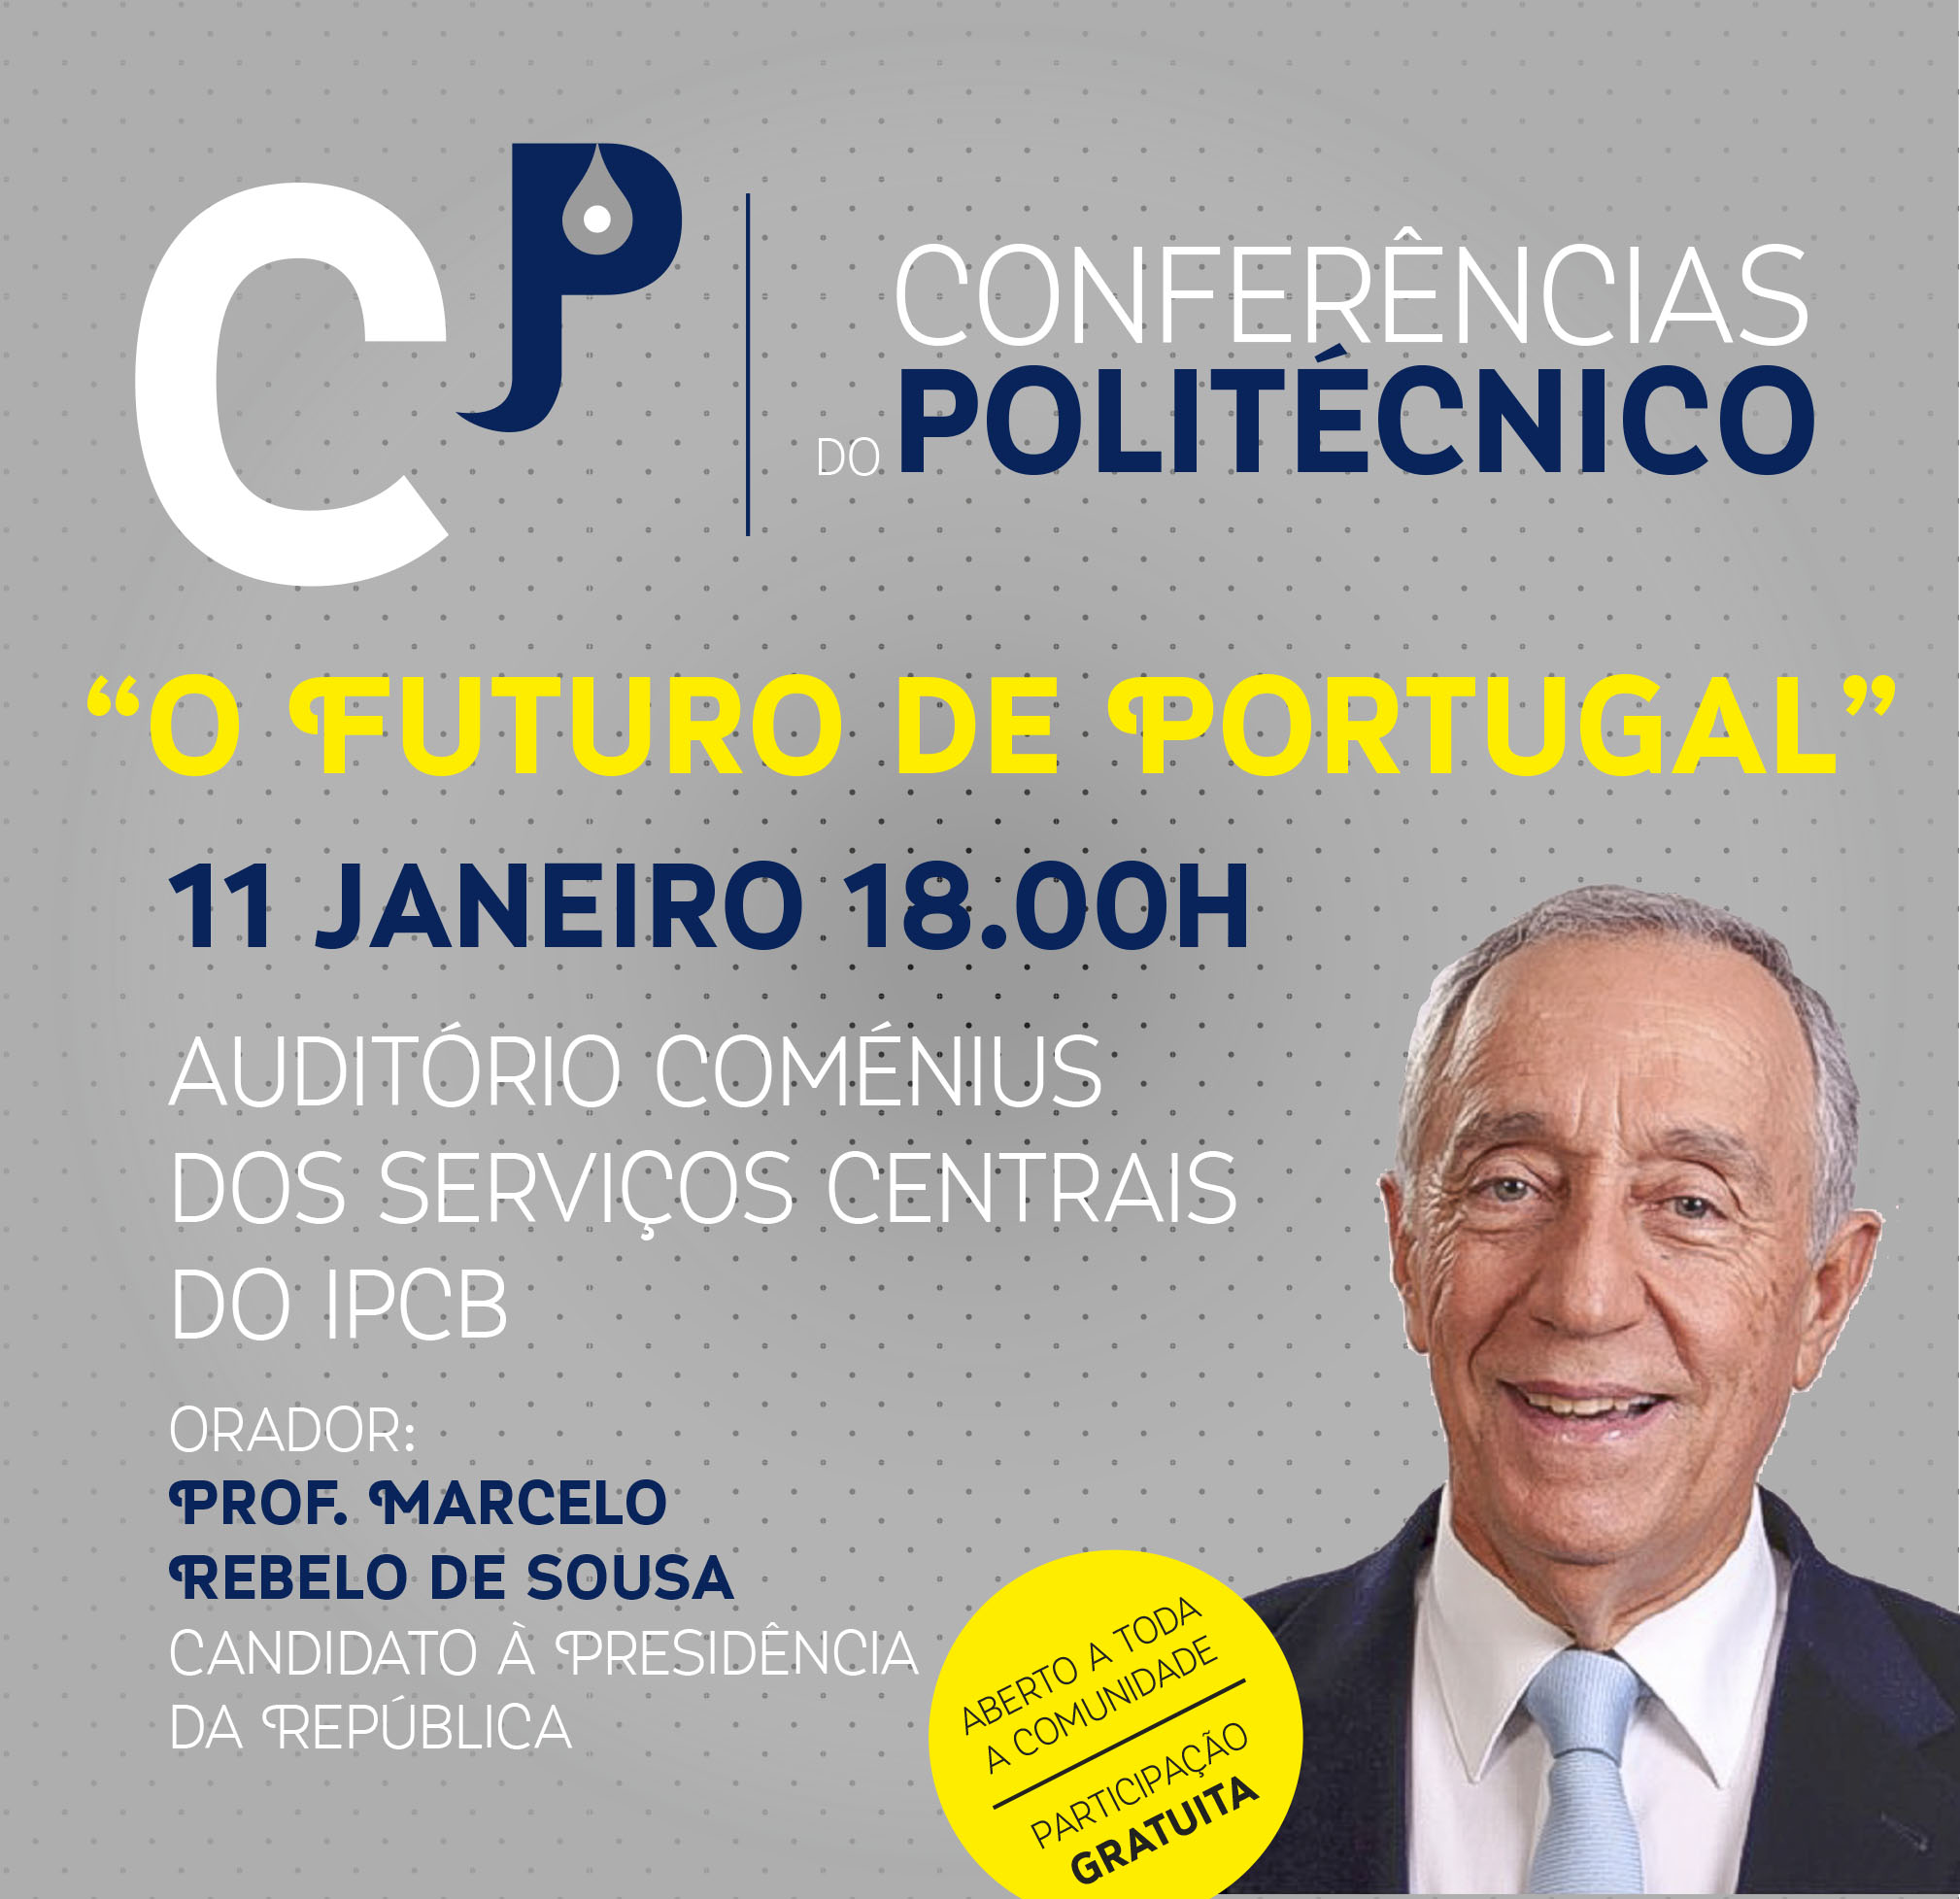 Castelo Branco: Marcelo Rebelo de Sousa nas “Conferências do Politécnico”